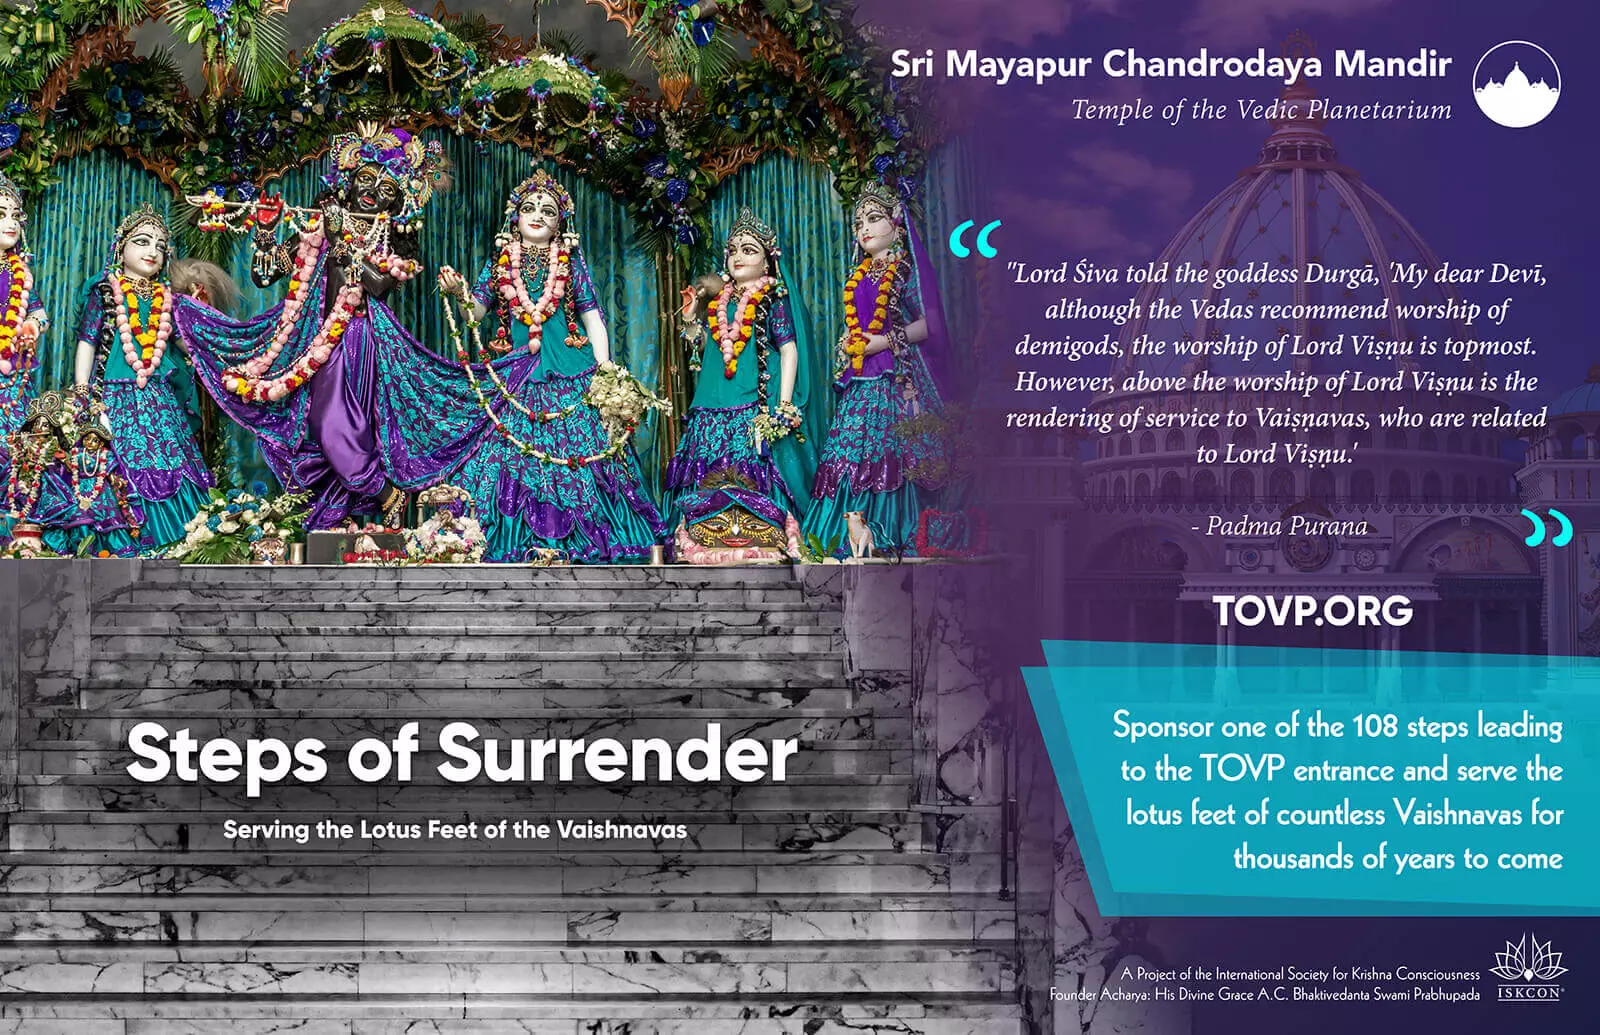 TOVP Steps of Surrender Campaign - imagen destacada